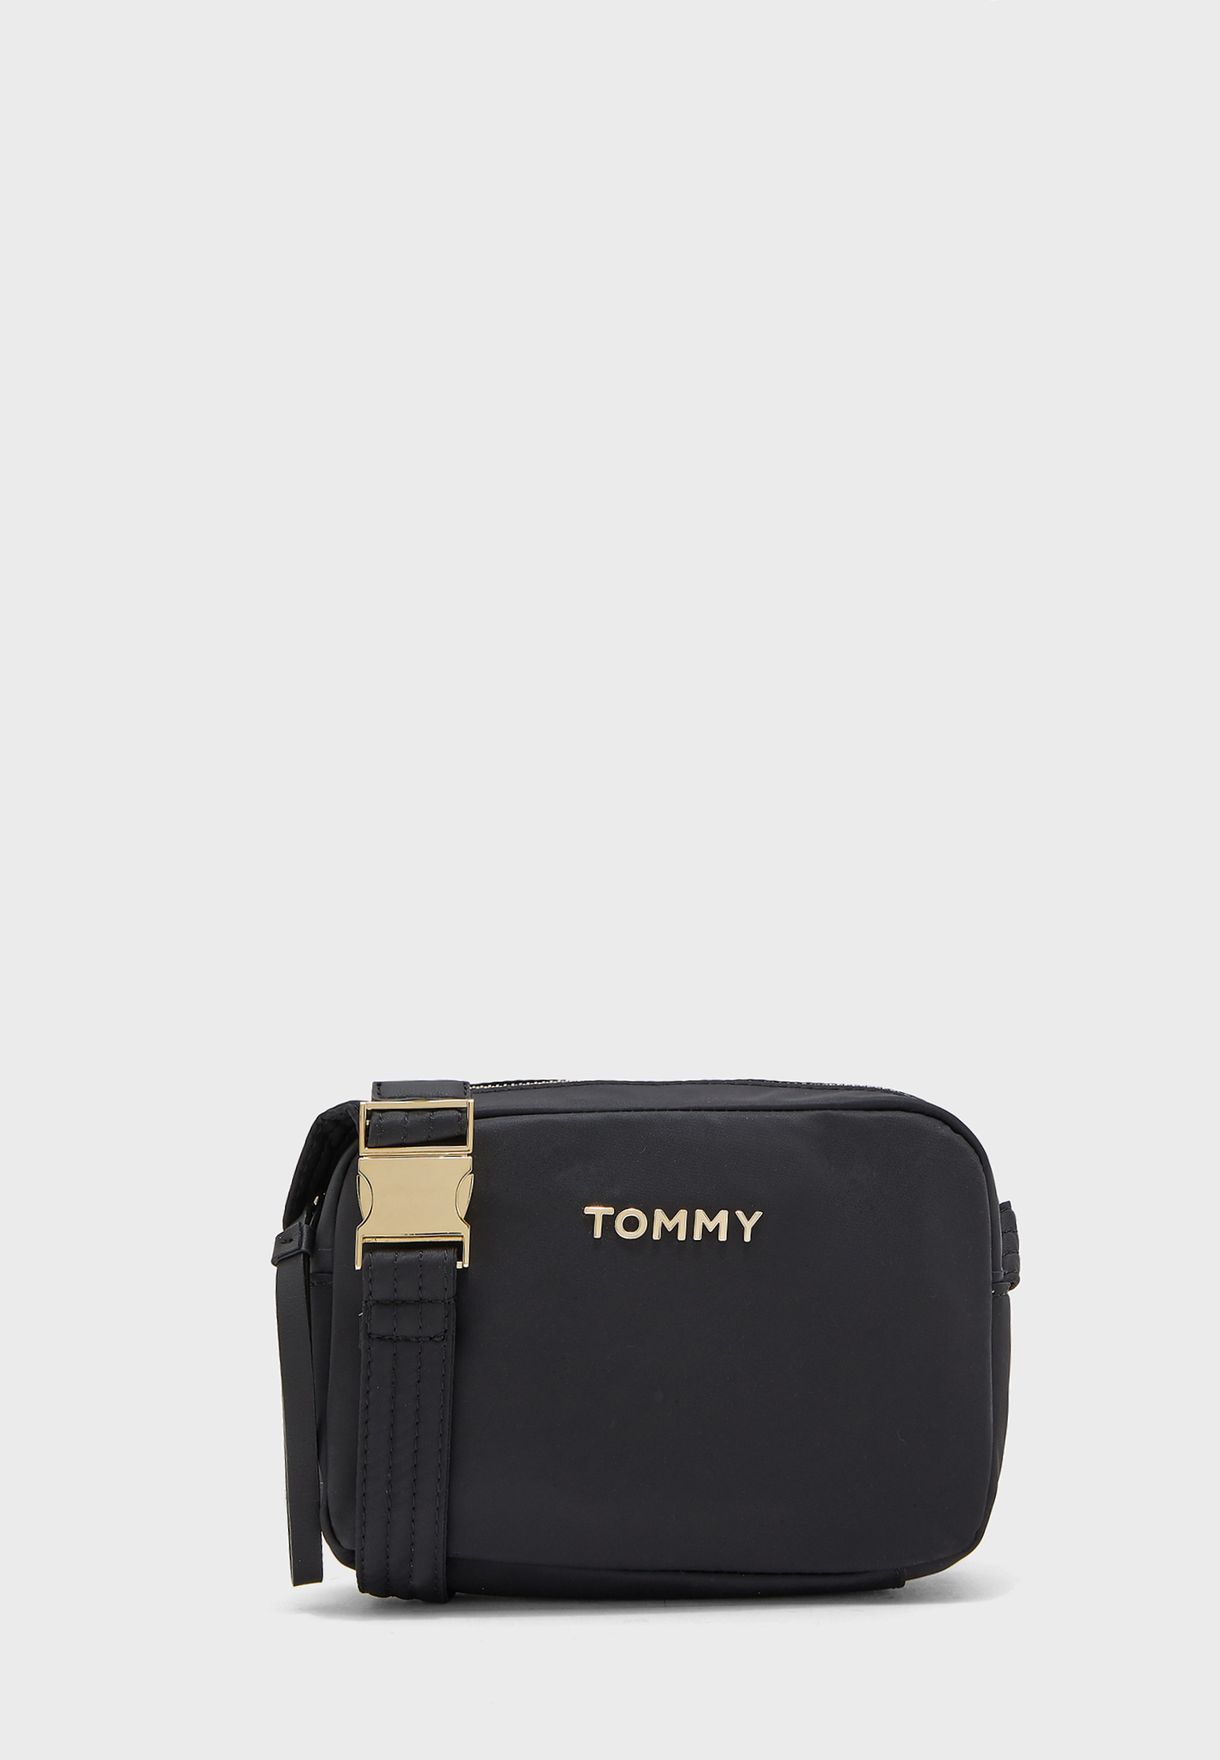 tommy hilfiger camera bag